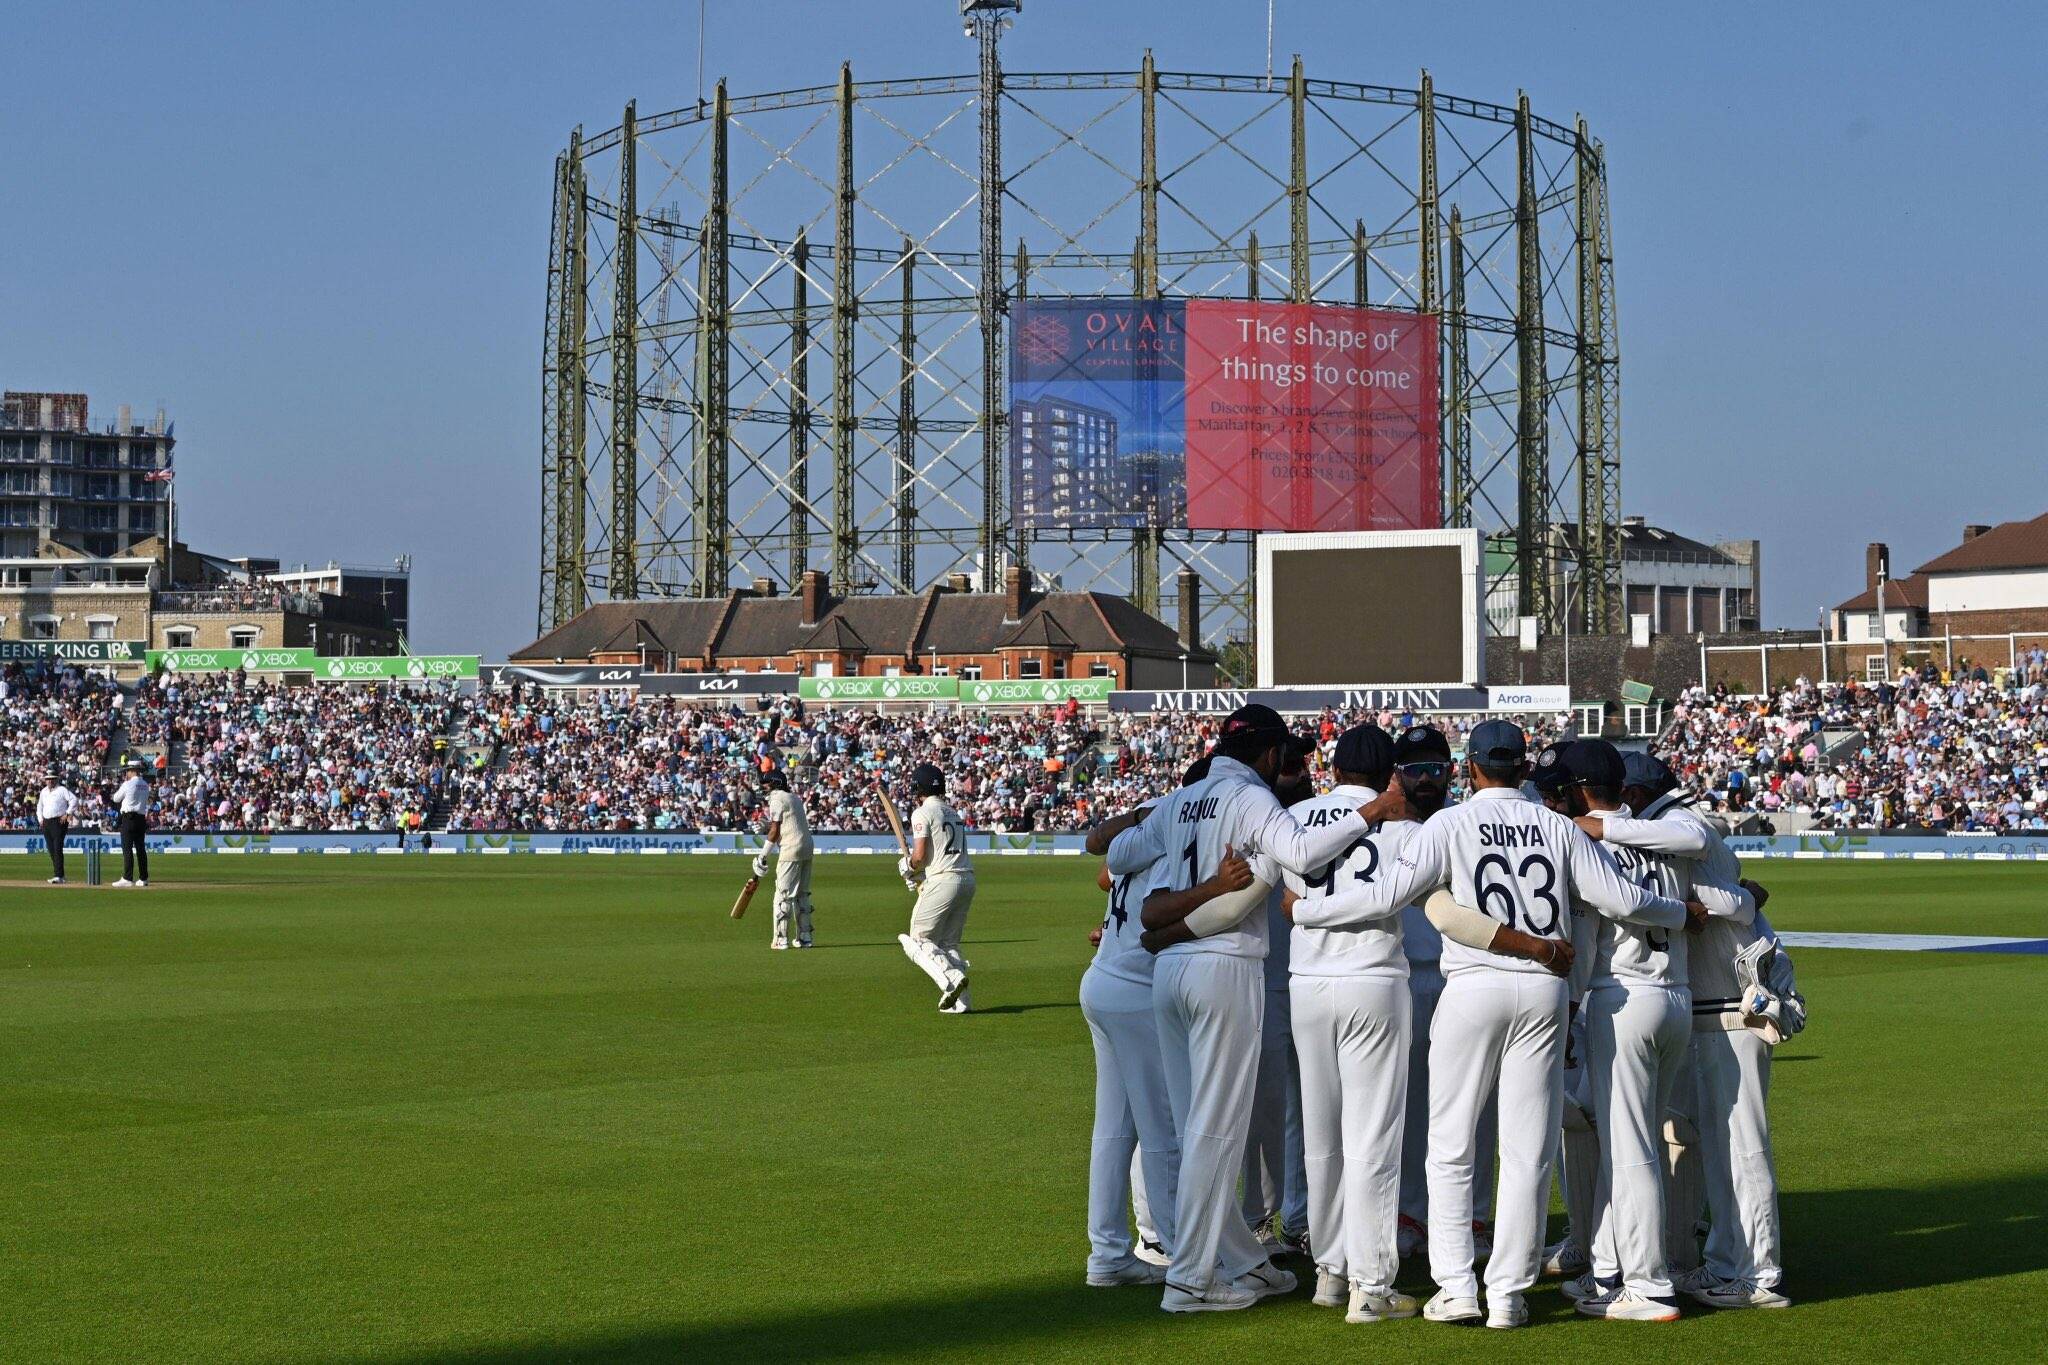 इंग्लंडविरुद्धच्या चौथ्या कसोटीत भारताने दमदार कमबॅक करत १५७ धावांनी ऐतिहासिक विजय मिळवला आहे.